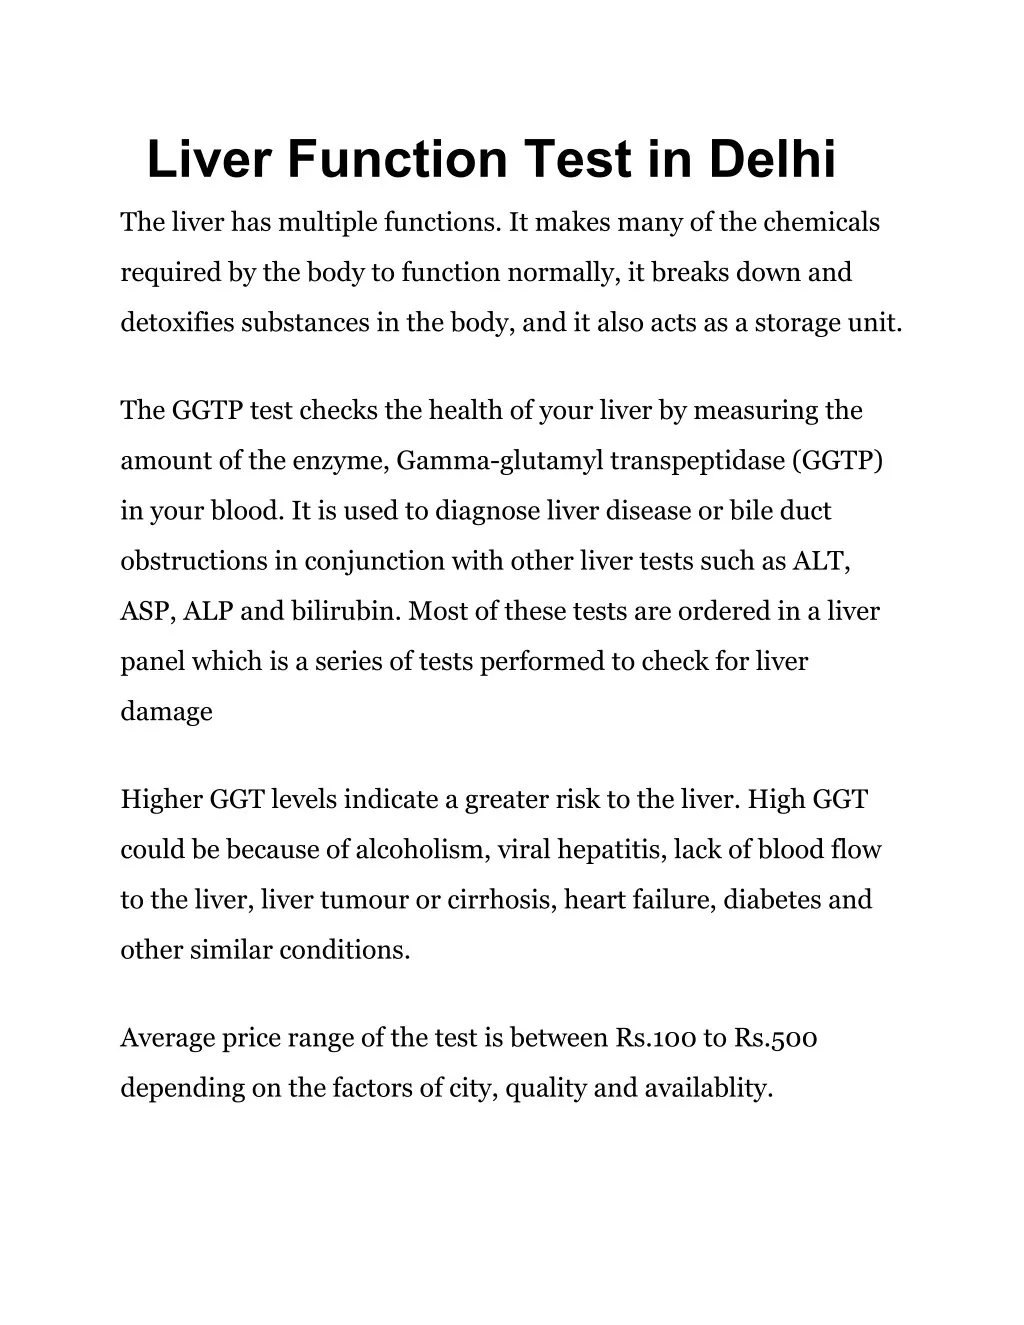 liver function test in delhi